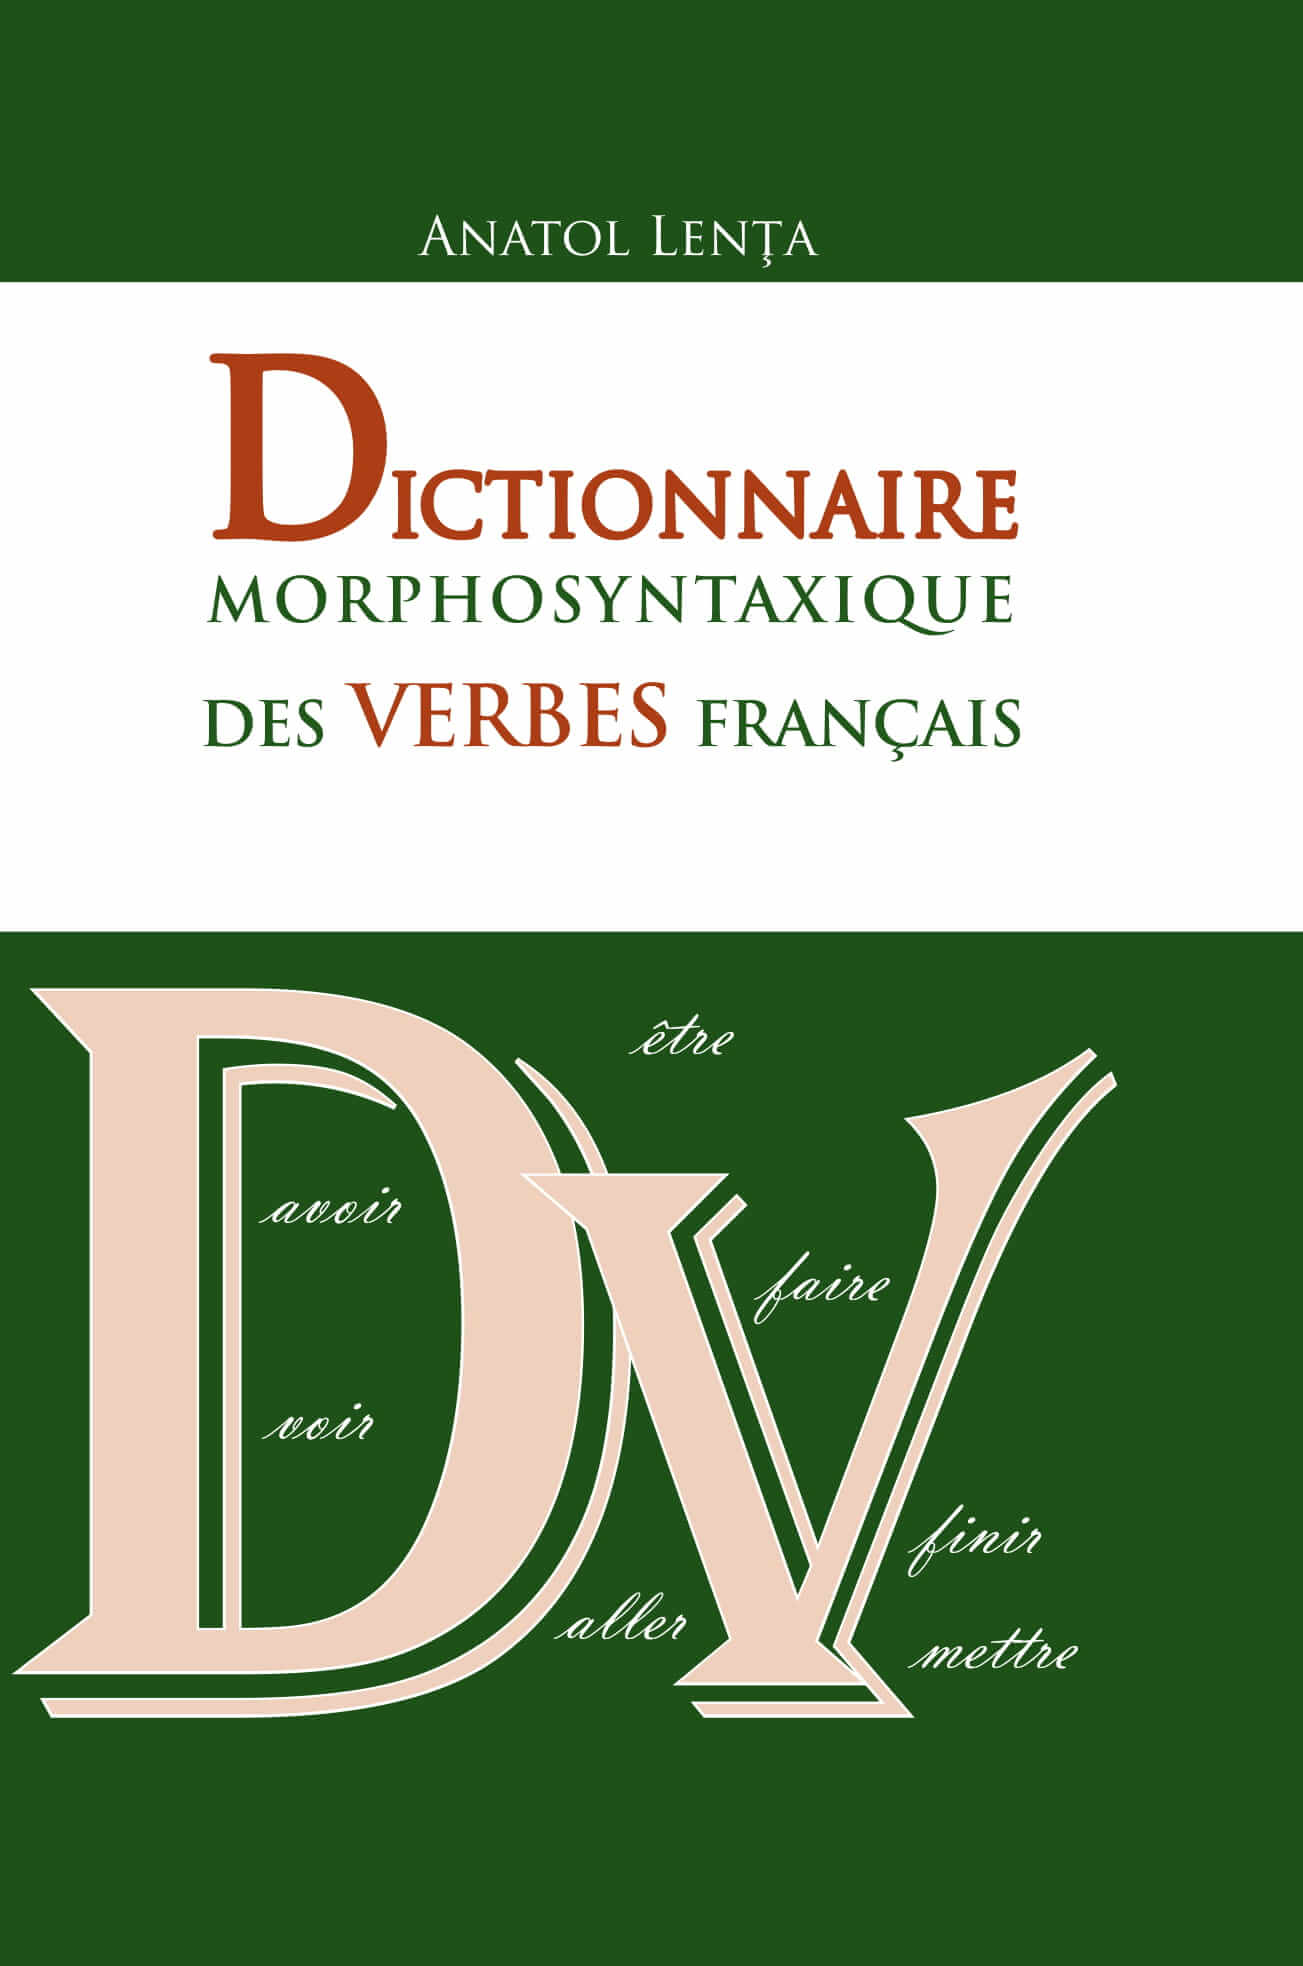 Dictionnaire morphosyntaxique des verbes francais | Anatol Lenta de la carturesti imagine 2021